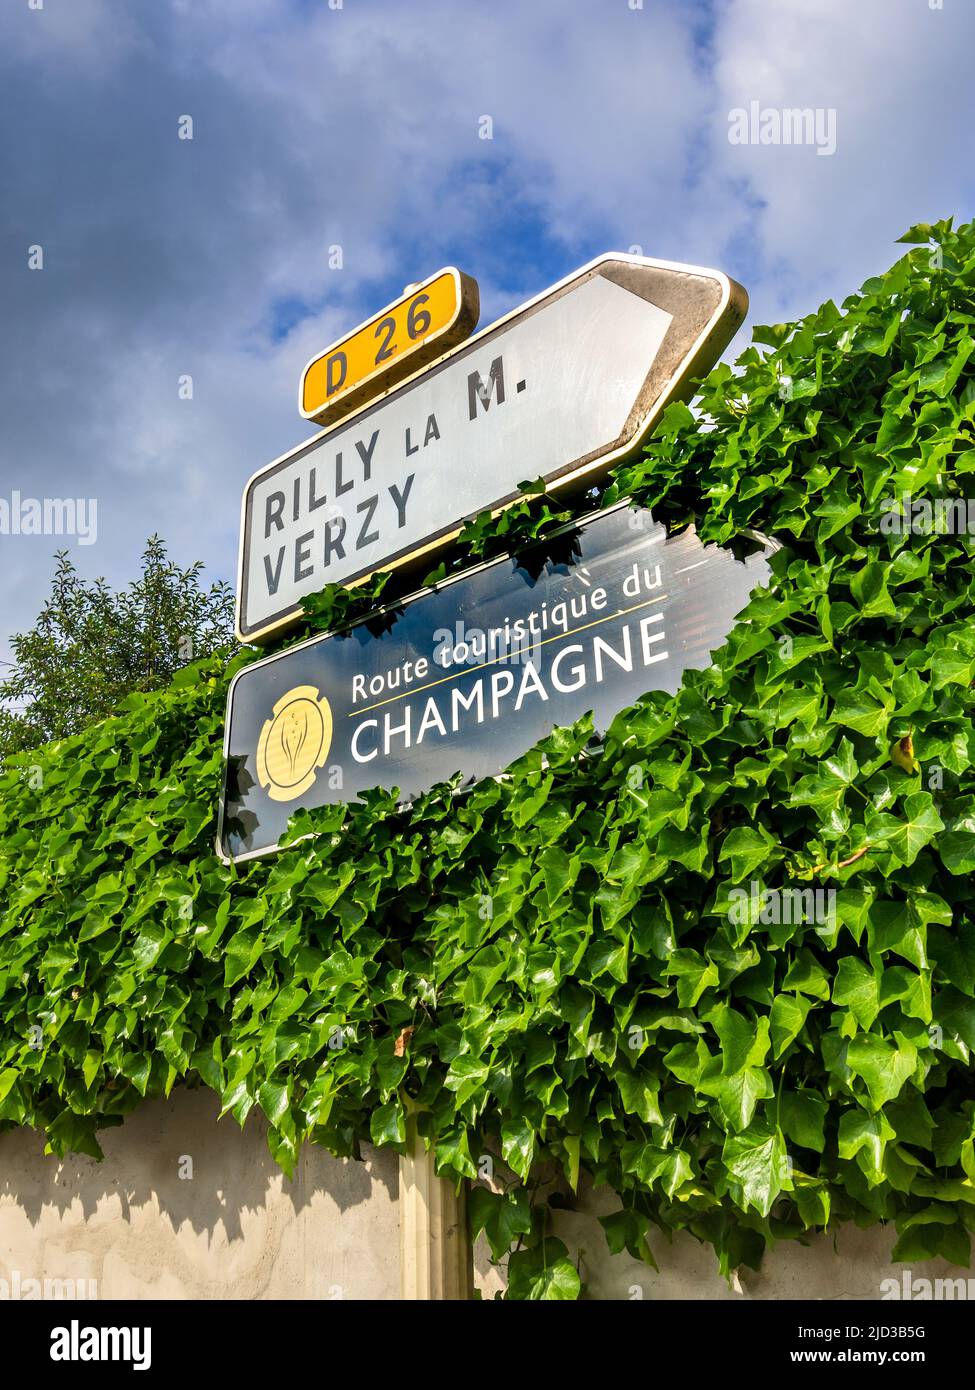 'Ruta Touristique du Champagne' señal - una de las varias rutas alrededor de Reims y Epernay en el departamento de Marne (51) de Francia. Foto de stock